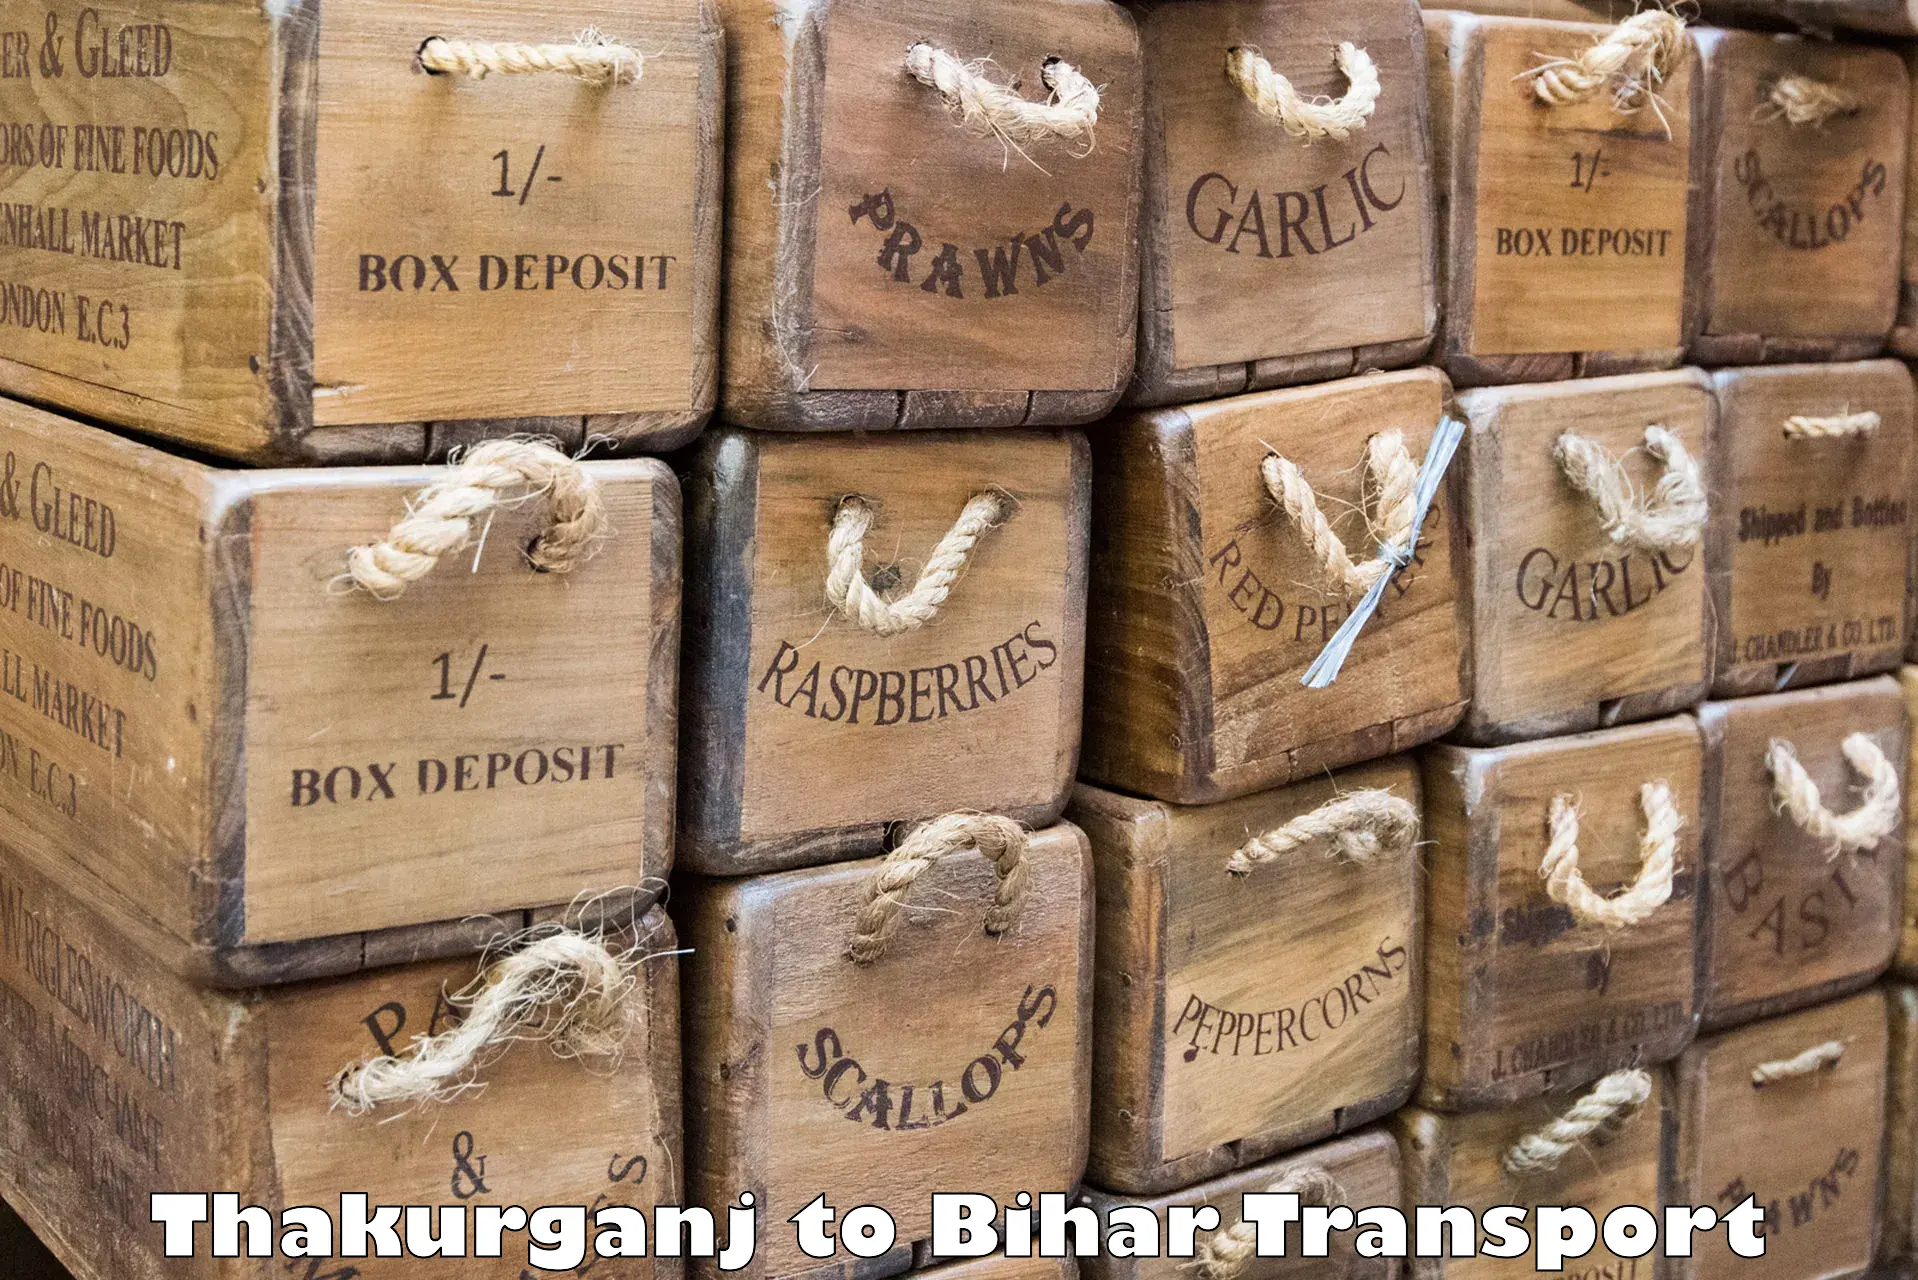 Daily parcel service transport Thakurganj to Dighwara